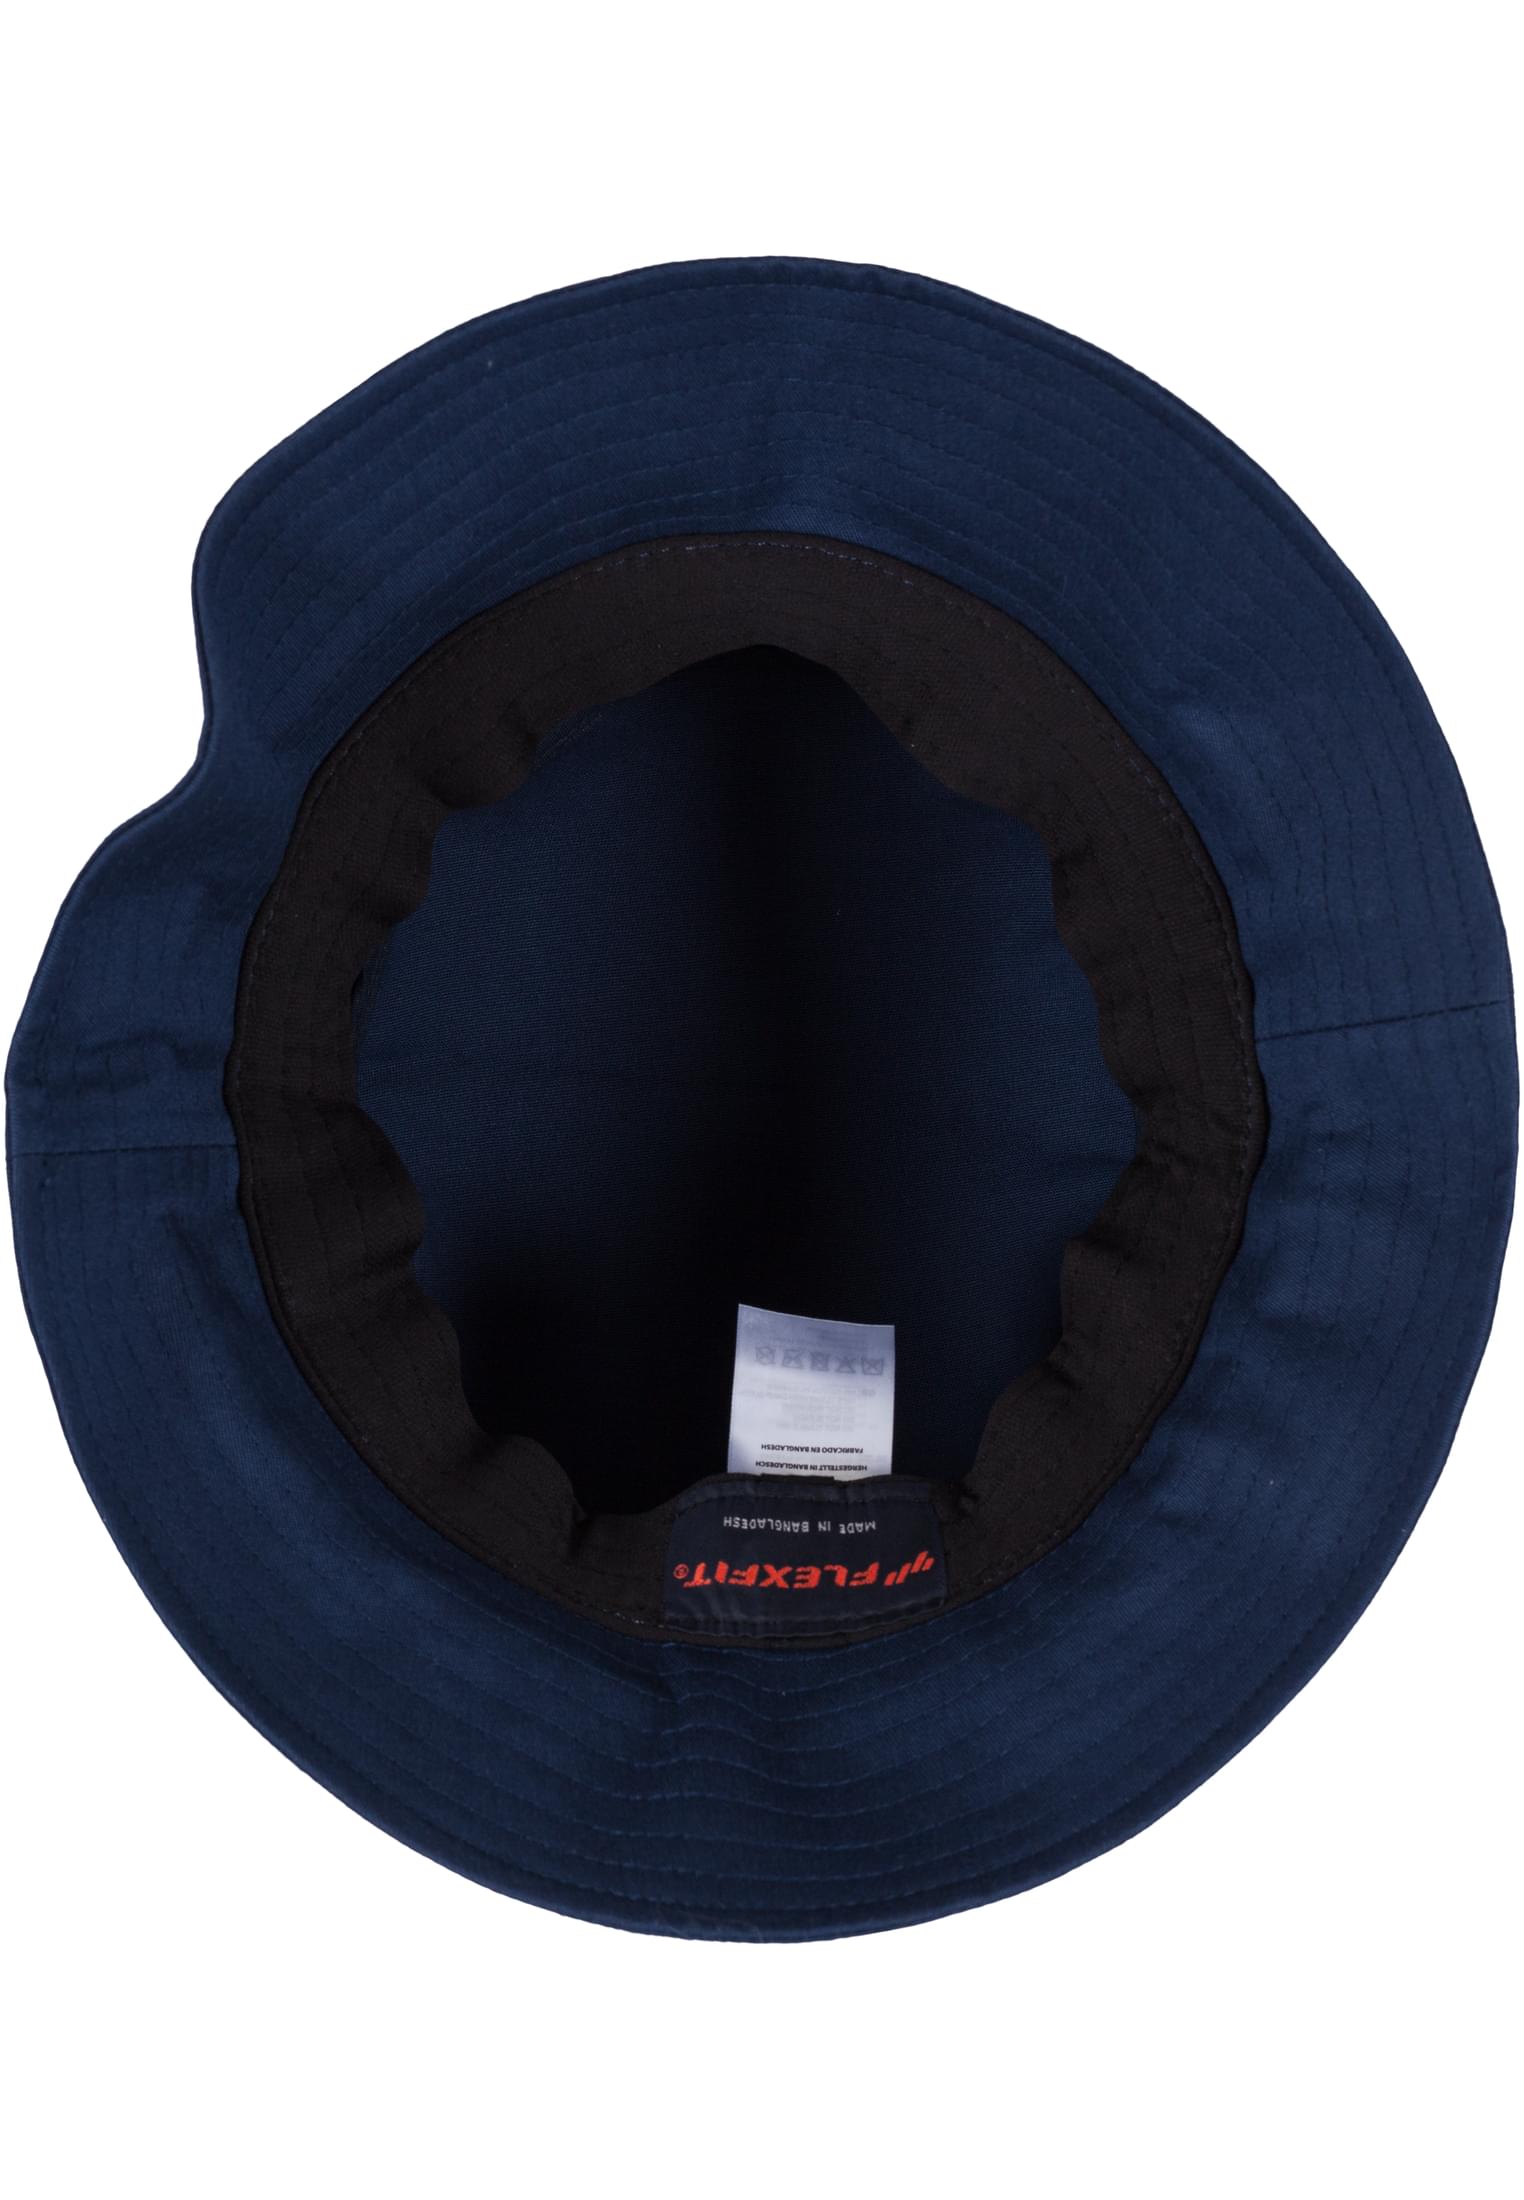 Bucket Flexfit Twill Cotton Hat-5003